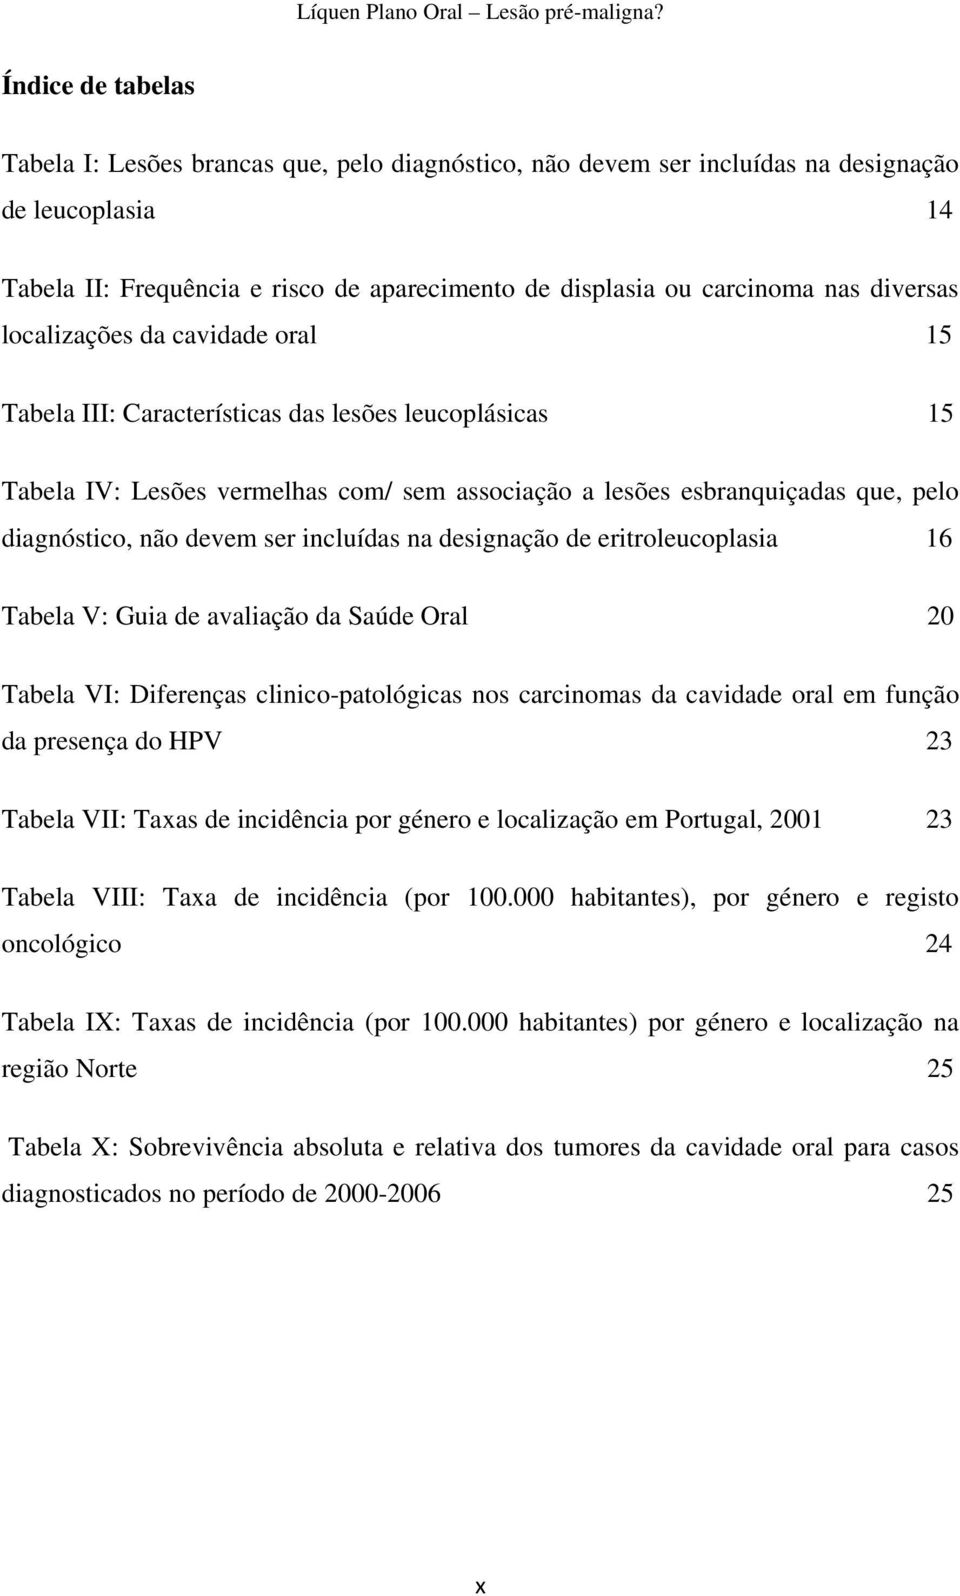 devem ser incluídas na designação de eritroleucoplasia 16 Tabela V: Guia de avaliação da Saúde Oral 20 Tabela VI: Diferenças clinico-patológicas nos carcinomas da cavidade oral em função da presença